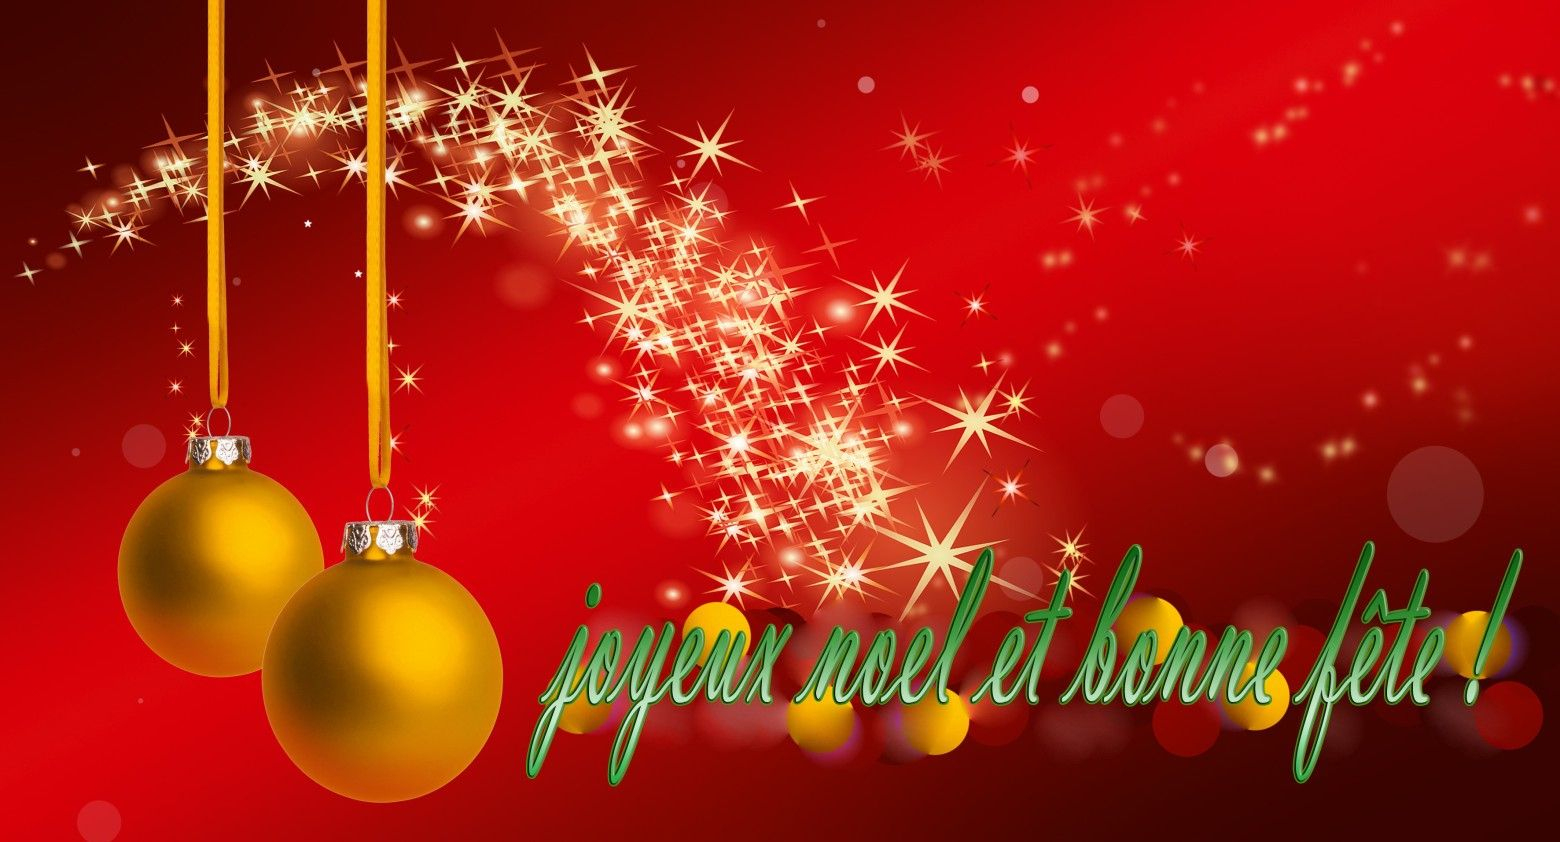 Carte Noel A Telecharger Gratuitement  Lighteam dedans Cartes Noël Gratuites 